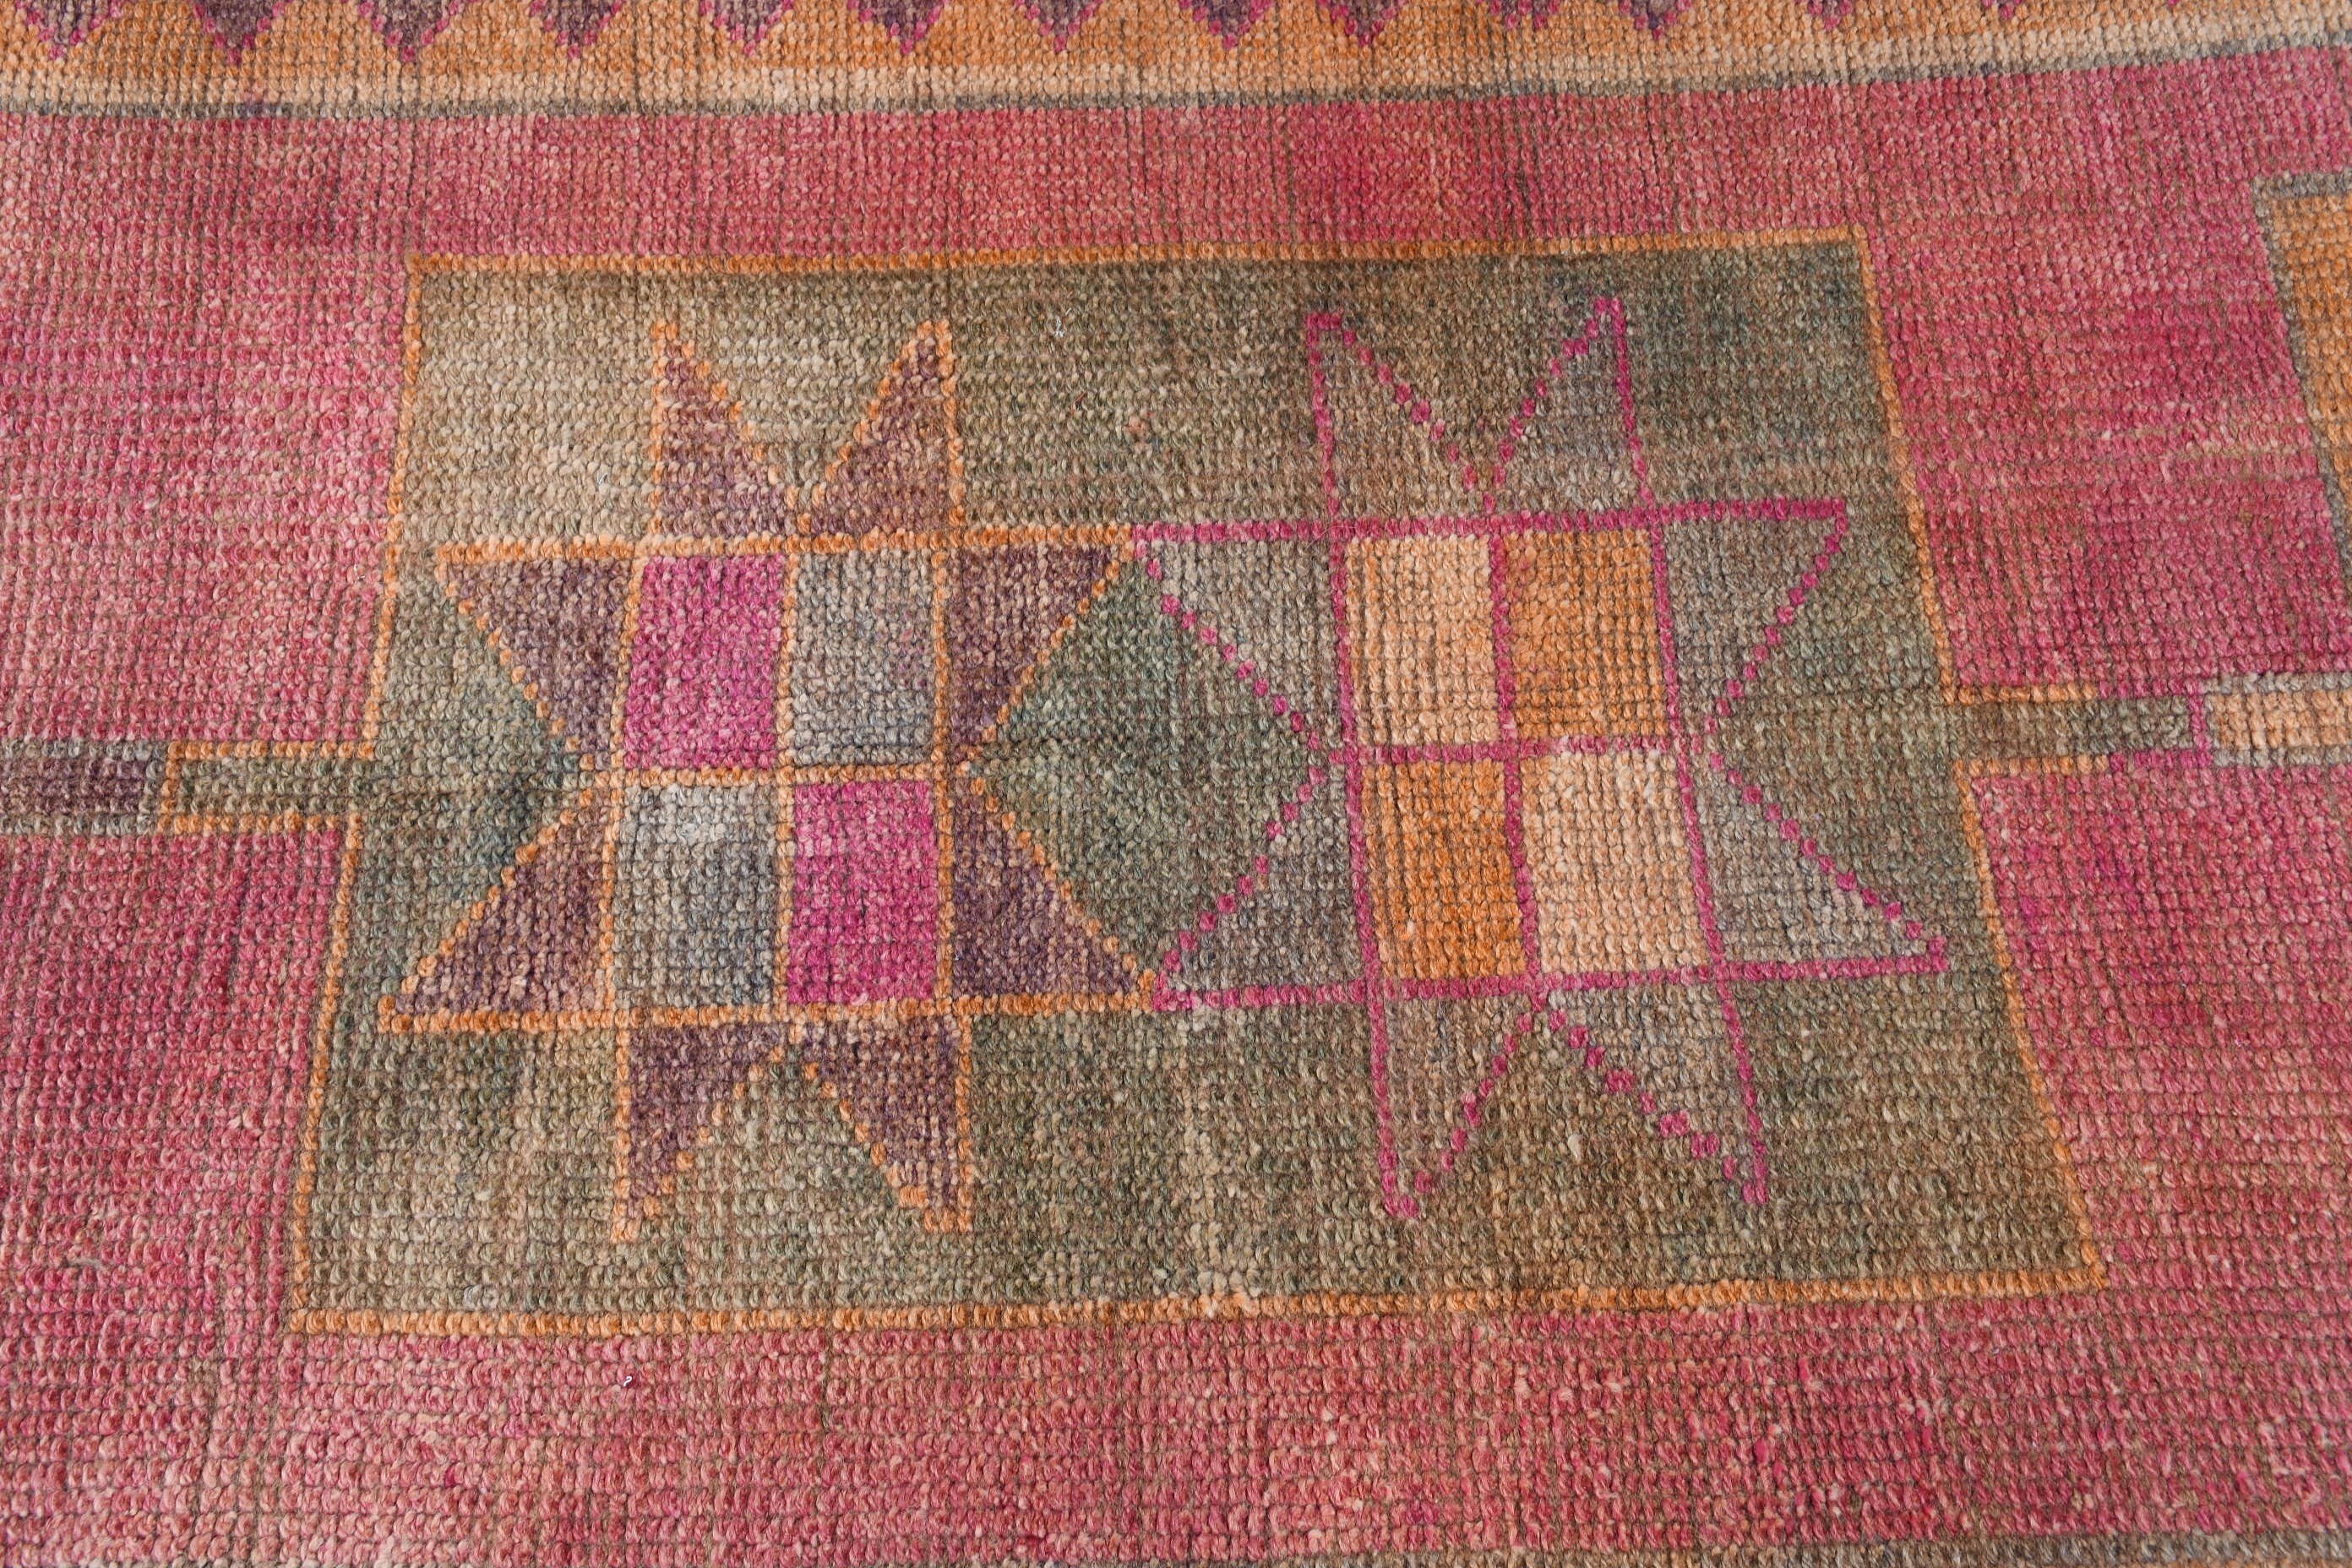 Antique Rug, 2.7x10.4 ft Runner Rug, Bright Rug, Rugs for Corridor, Pink Floor Rugs, Corridor Rugs, Vintage Rug, Oushak Rugs, Turkish Rug